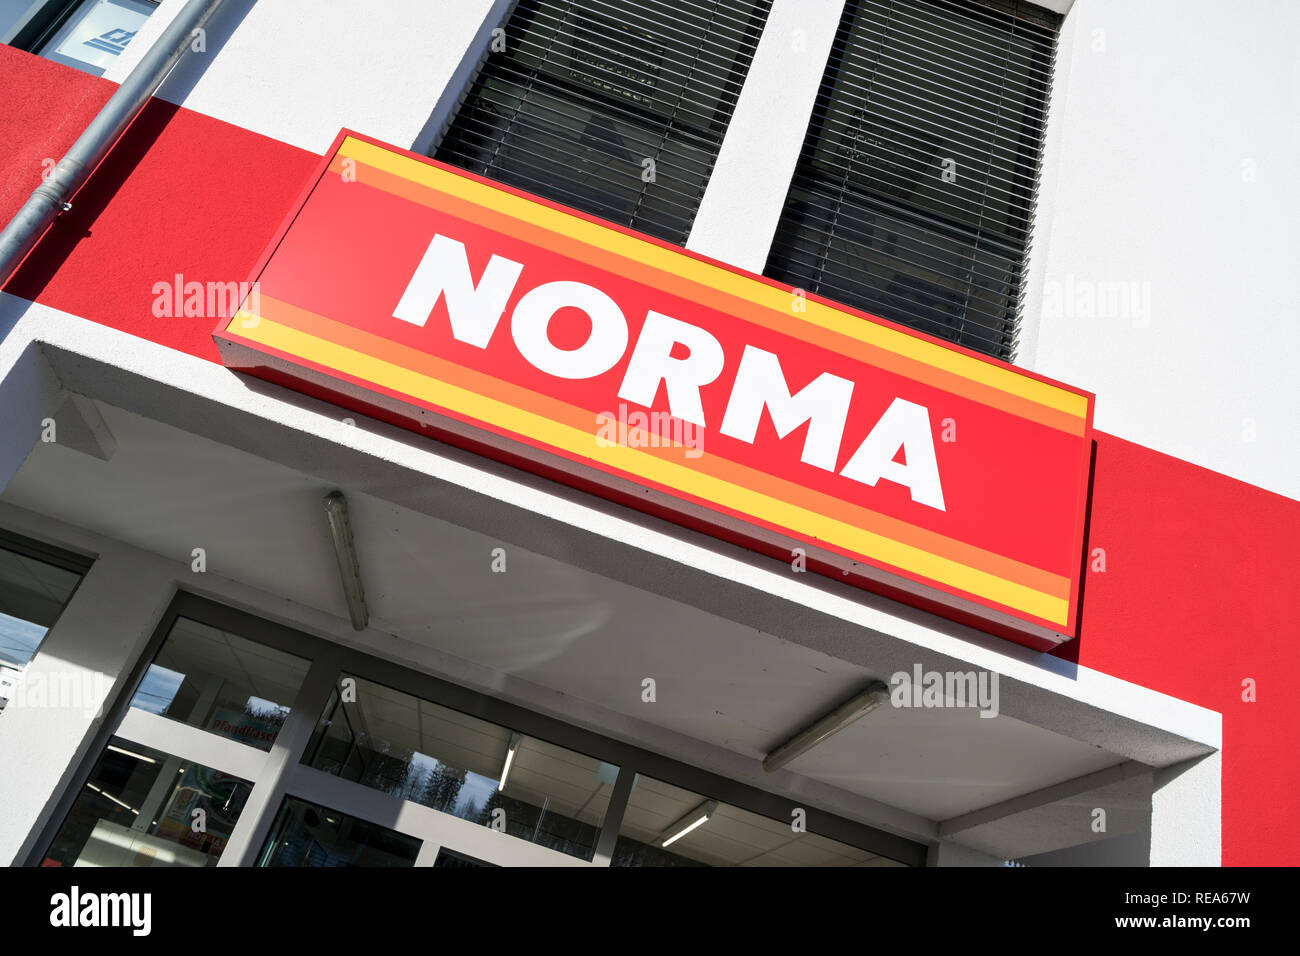 Norma Schild am Zweig. Norma ist ein Lebensmittel Discounter mit mehr als 1.300 Filialen in Deutschland, Österreich, Frankreich und der Tschechischen Republik. Stockfoto